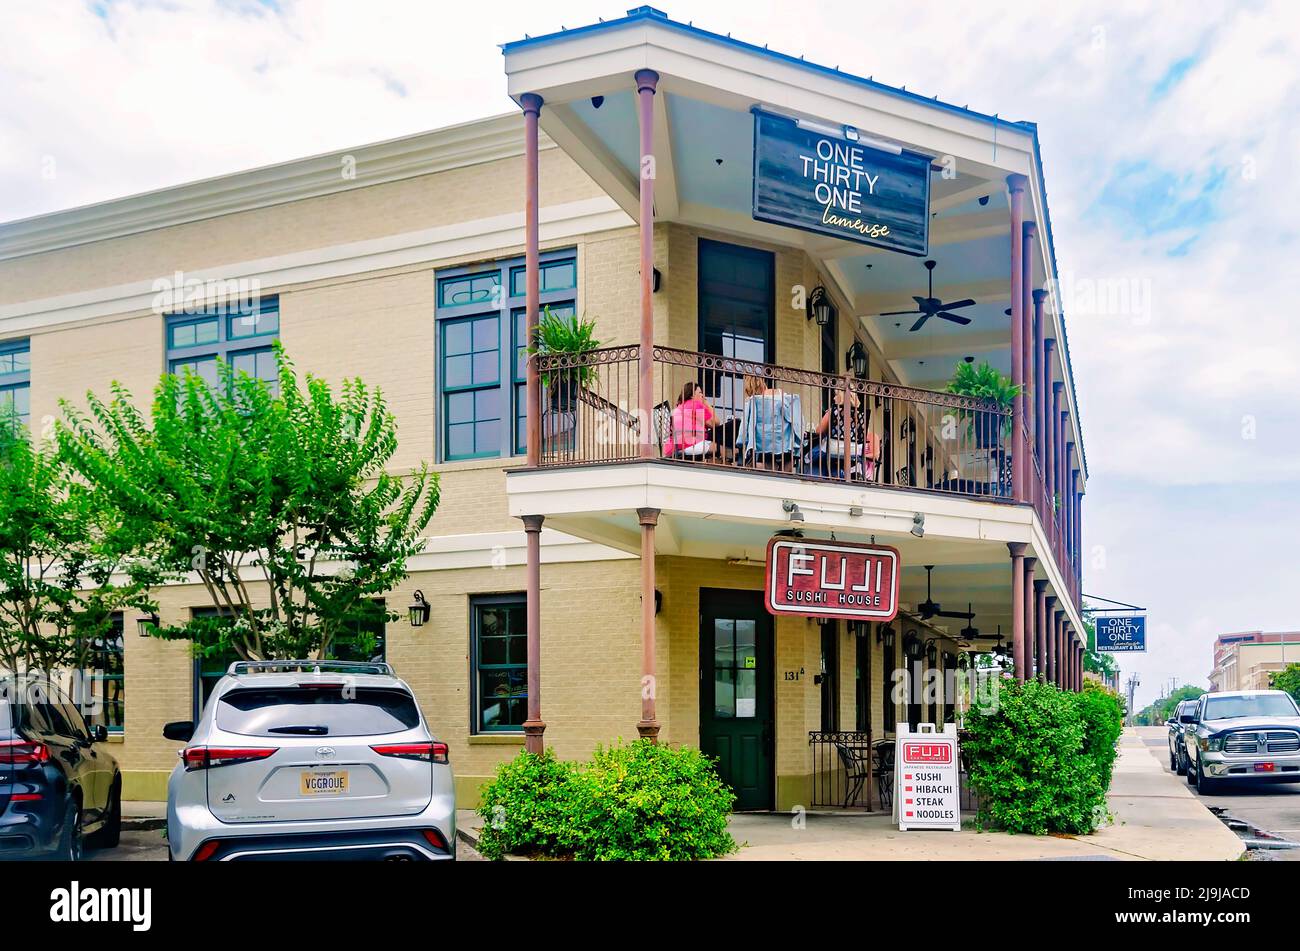 Une maison de trente et un Lameuse et Fuji Sushi sont photographiés, le 22 mai 2022, à Biloxi, Mississippi. Les restaurants sont situés sur la rue Lameuse. Banque D'Images